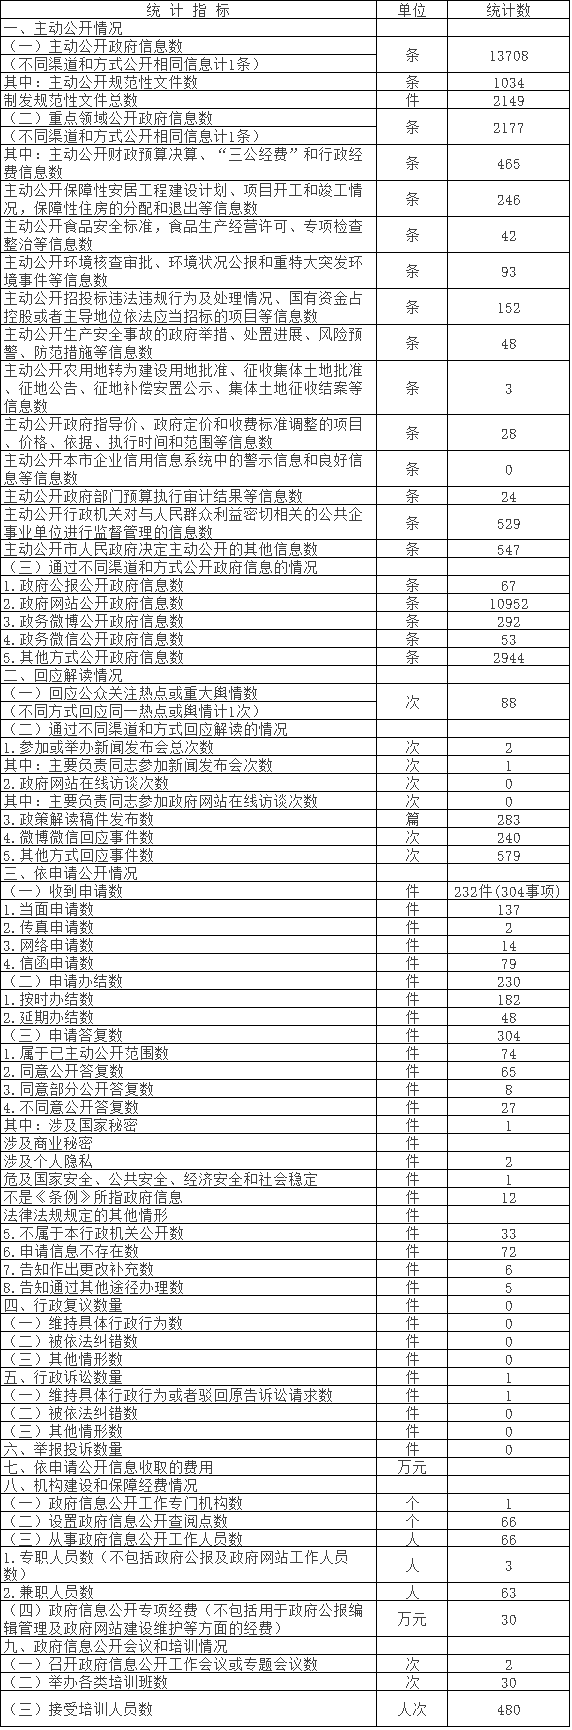 北京市密云区人民政府信息公开情况统计表(2017年度)